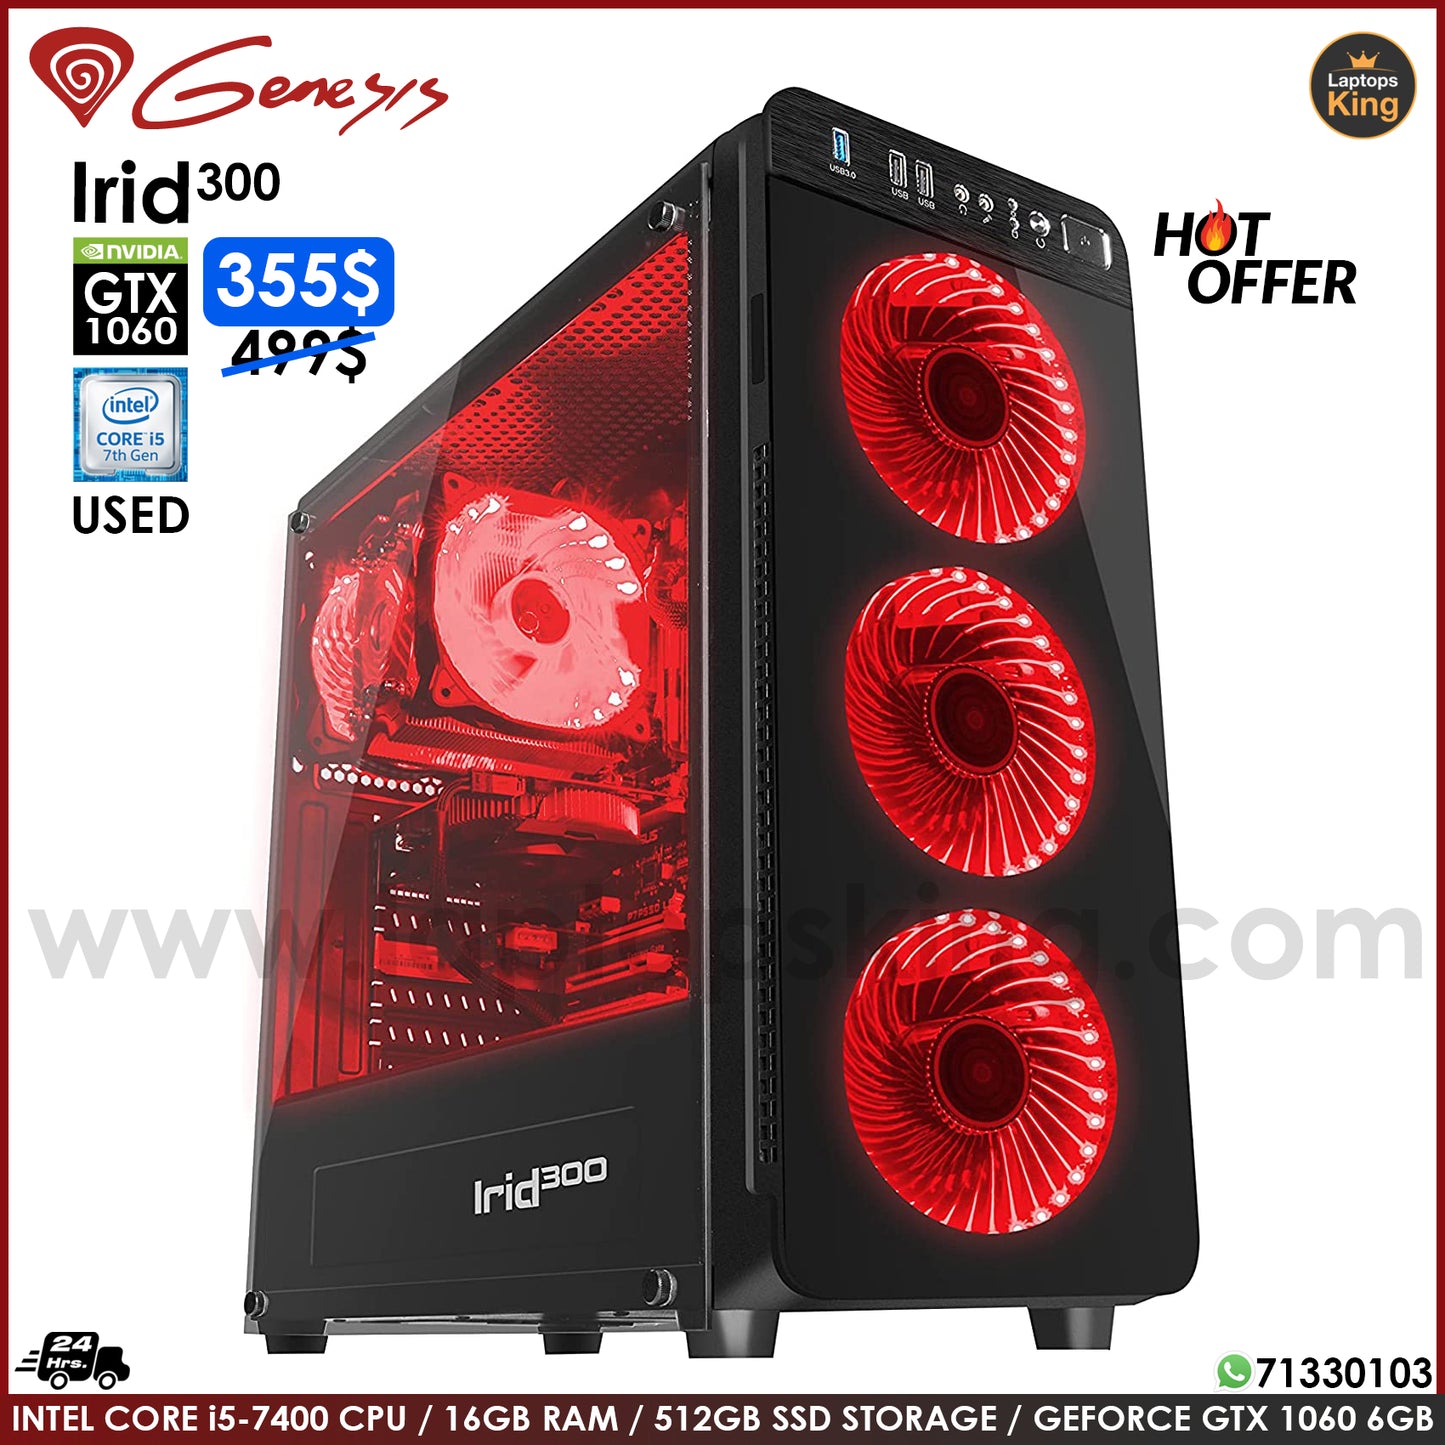 Genesis Irid 300 Core i5-7400 Gtx 1060 | Red | Gaming Desktop Computer (Used Very Clean)